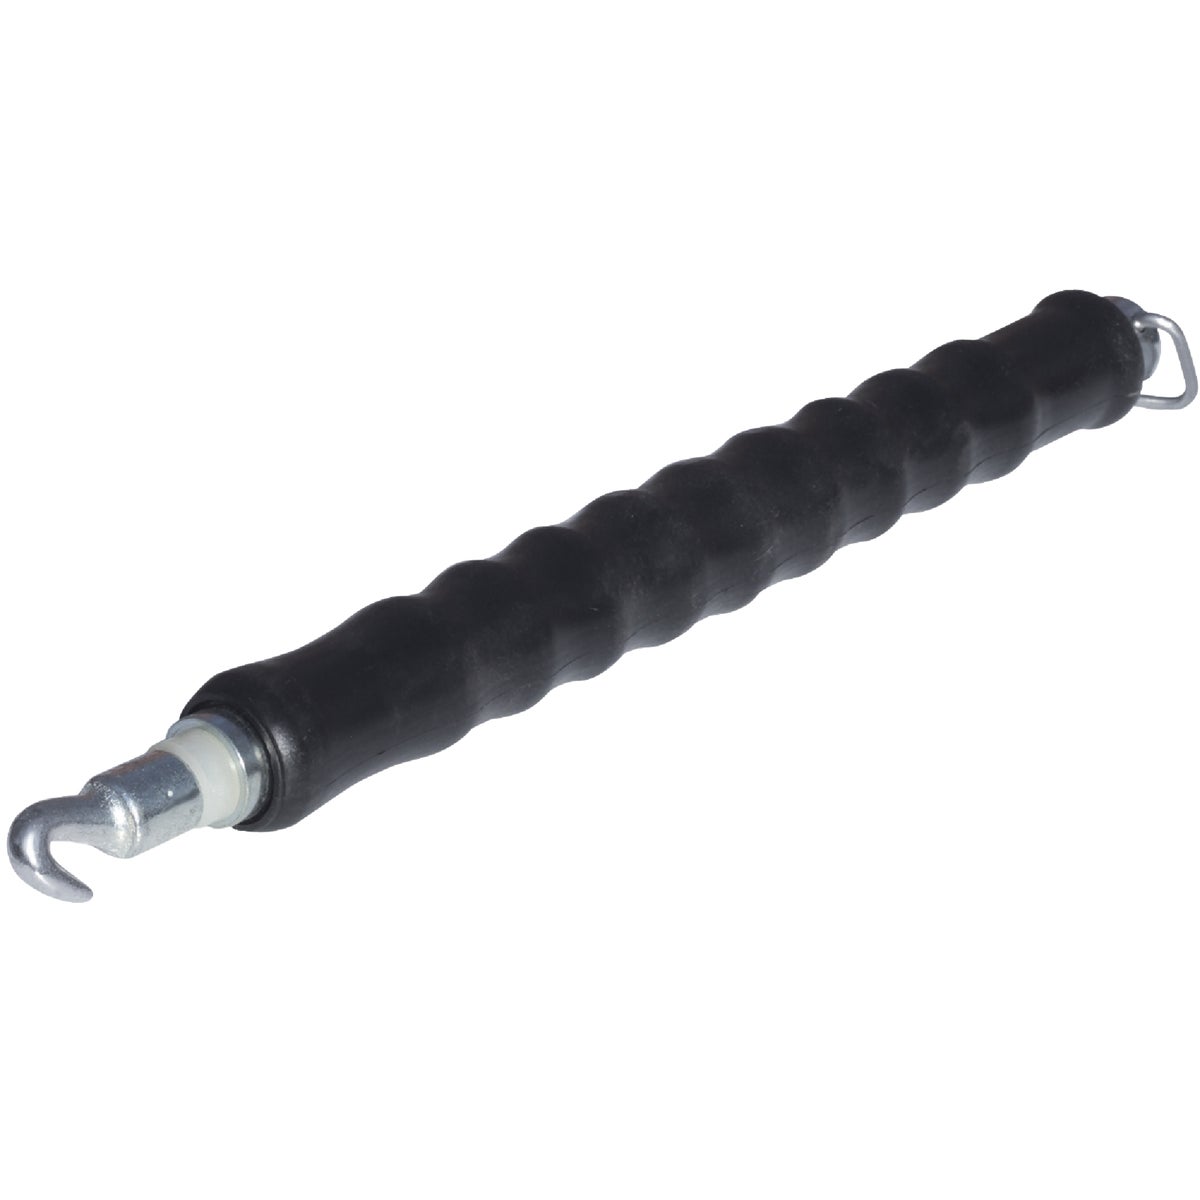 Grip-Rite Black Rebar Ties Wire Tool